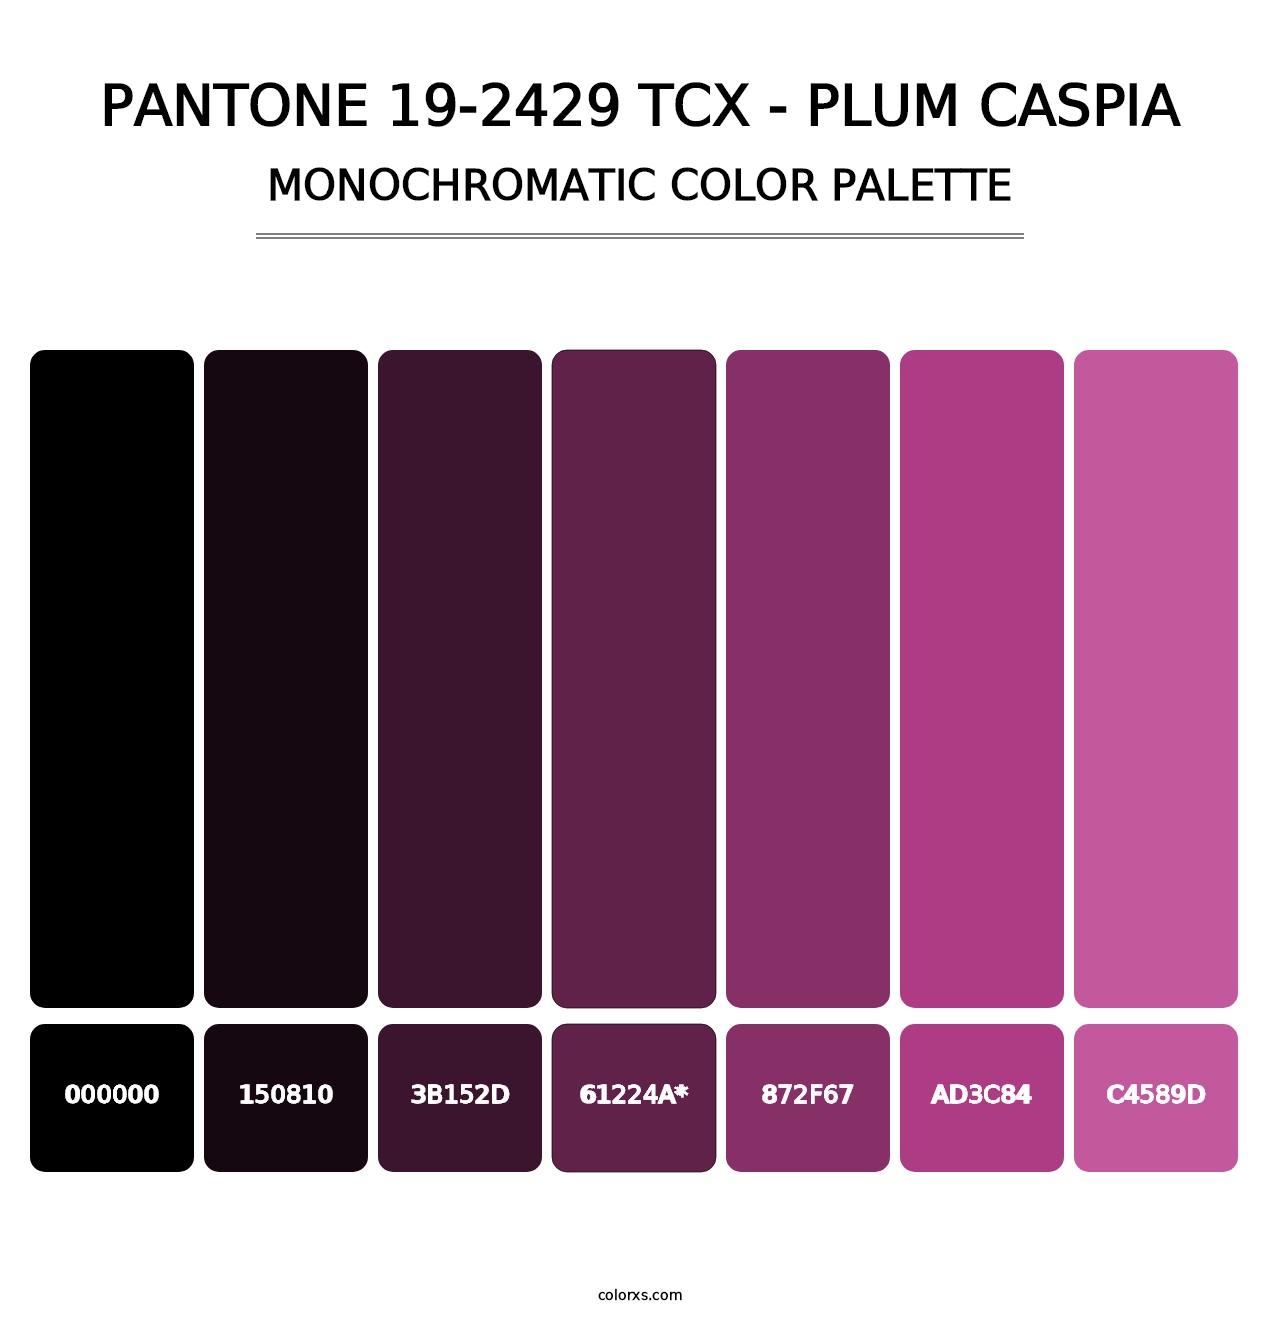 PANTONE 19-2429 TCX - Plum Caspia - Monochromatic Color Palette